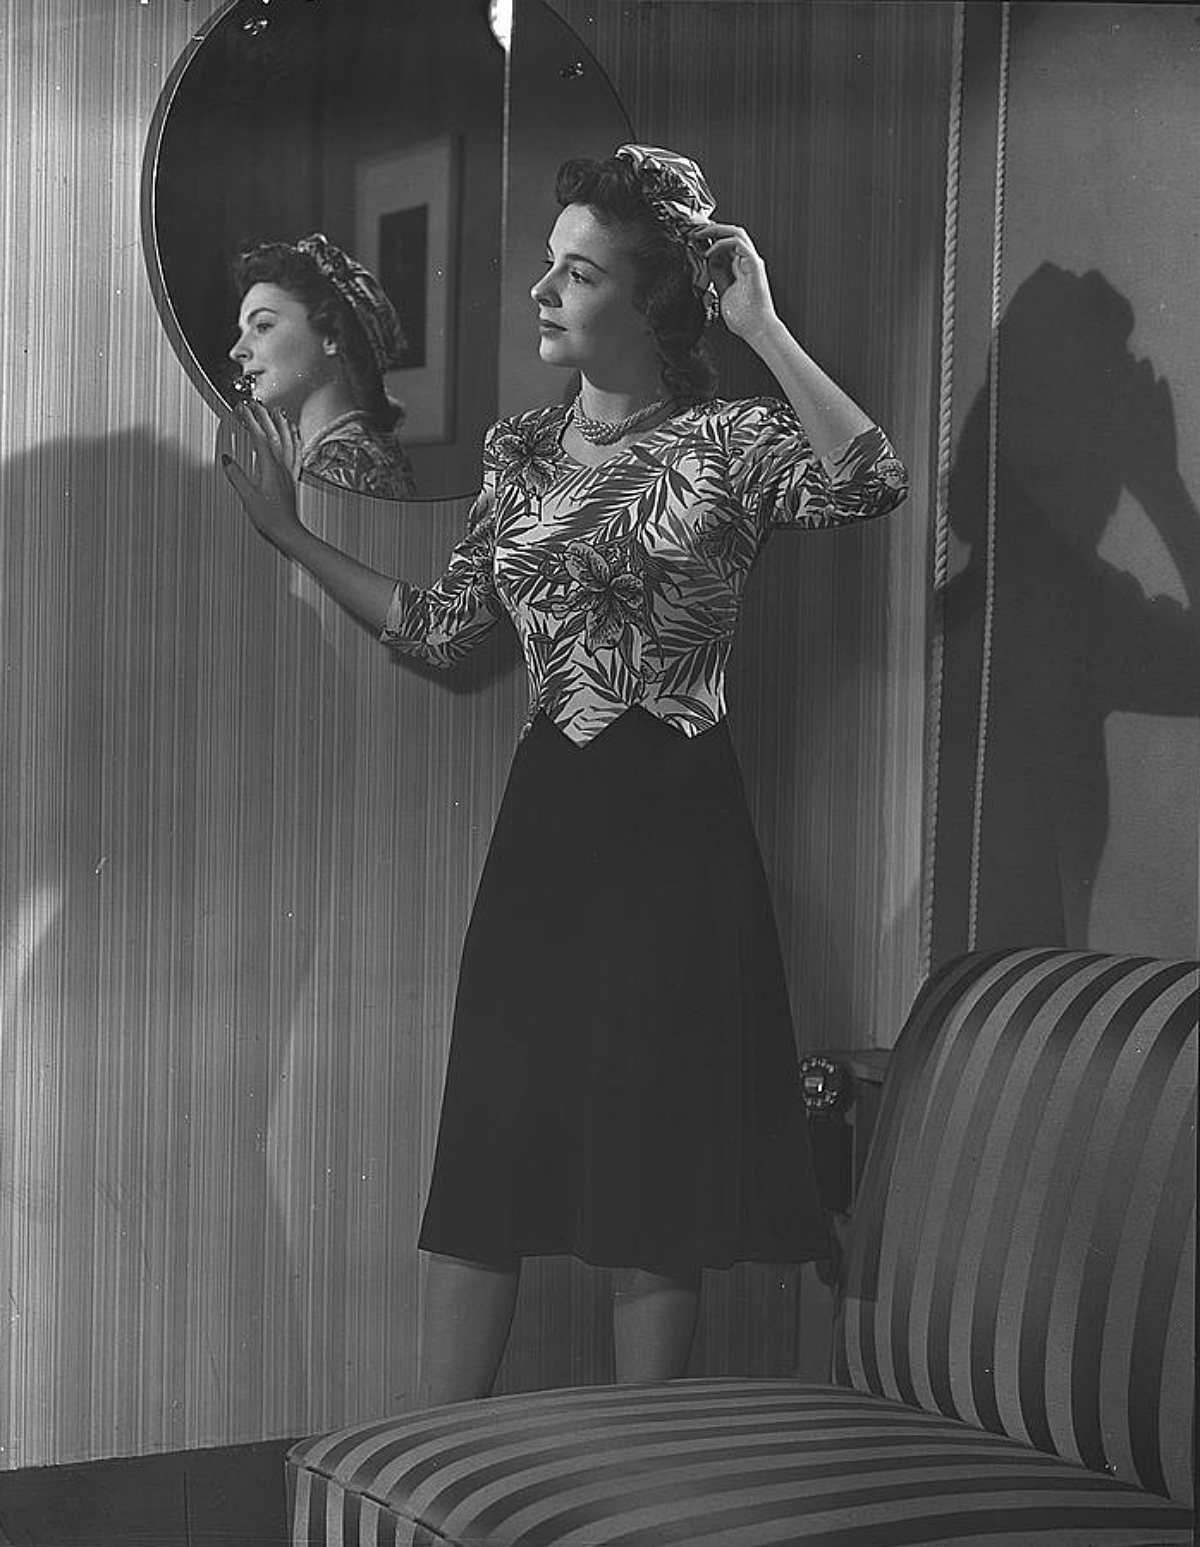 1943 dressmaking during wartime restrictions